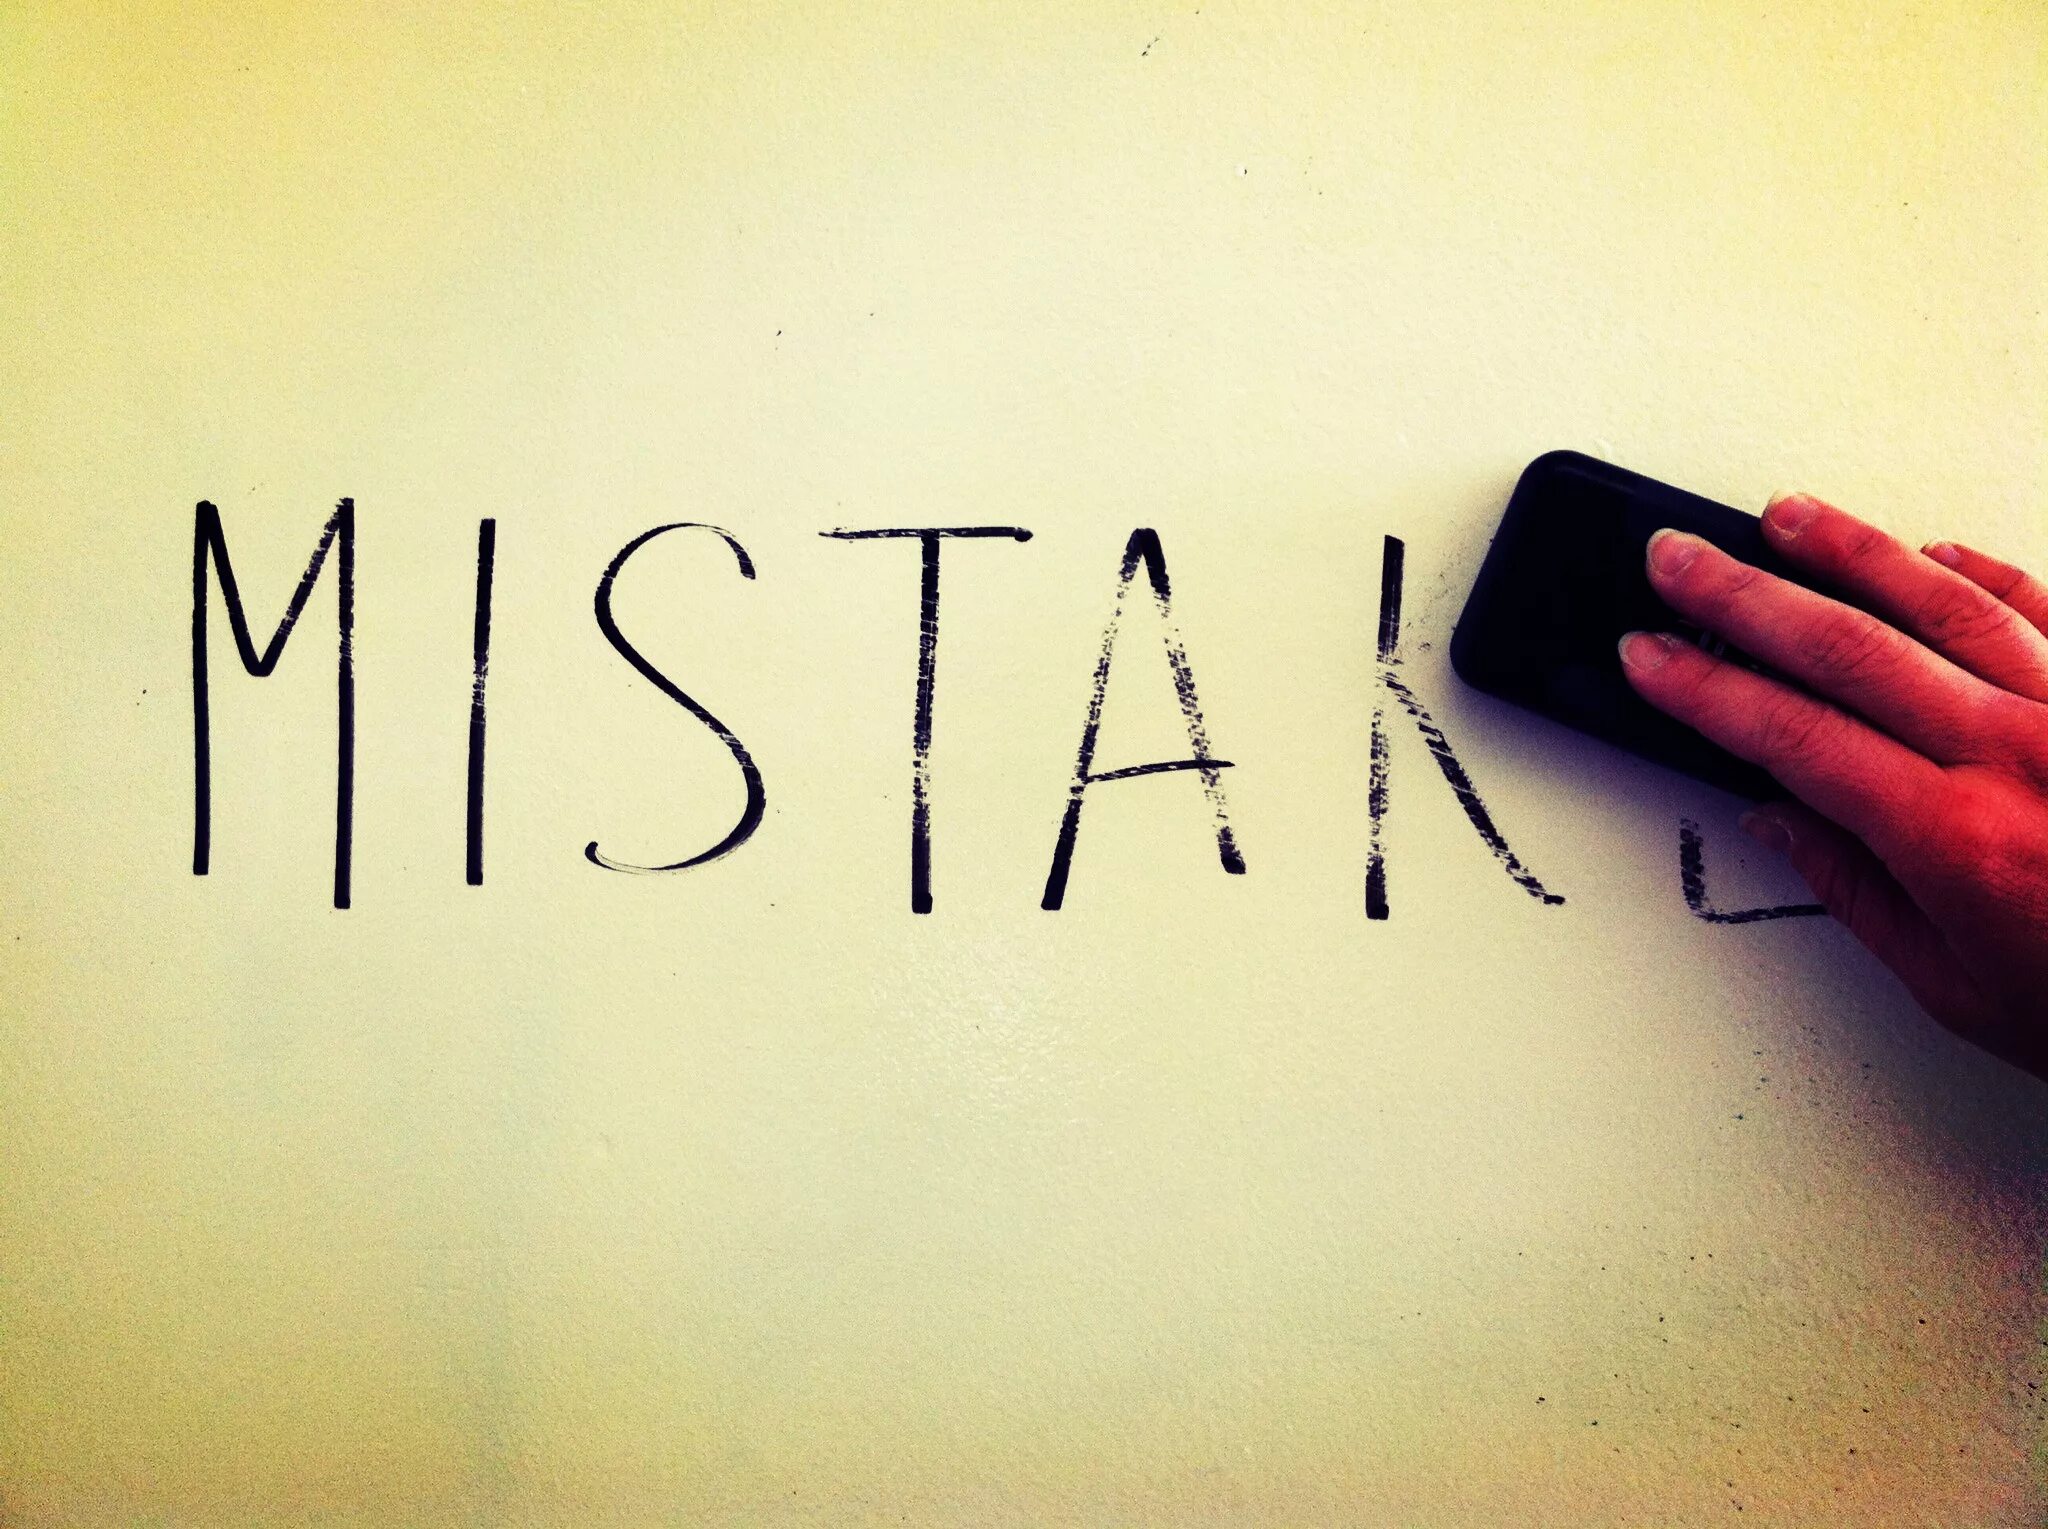 My best mistake. Mistakes картинки. Mistake рисунок. Make a mistake картинка. Make a mistake картинки для презентации.